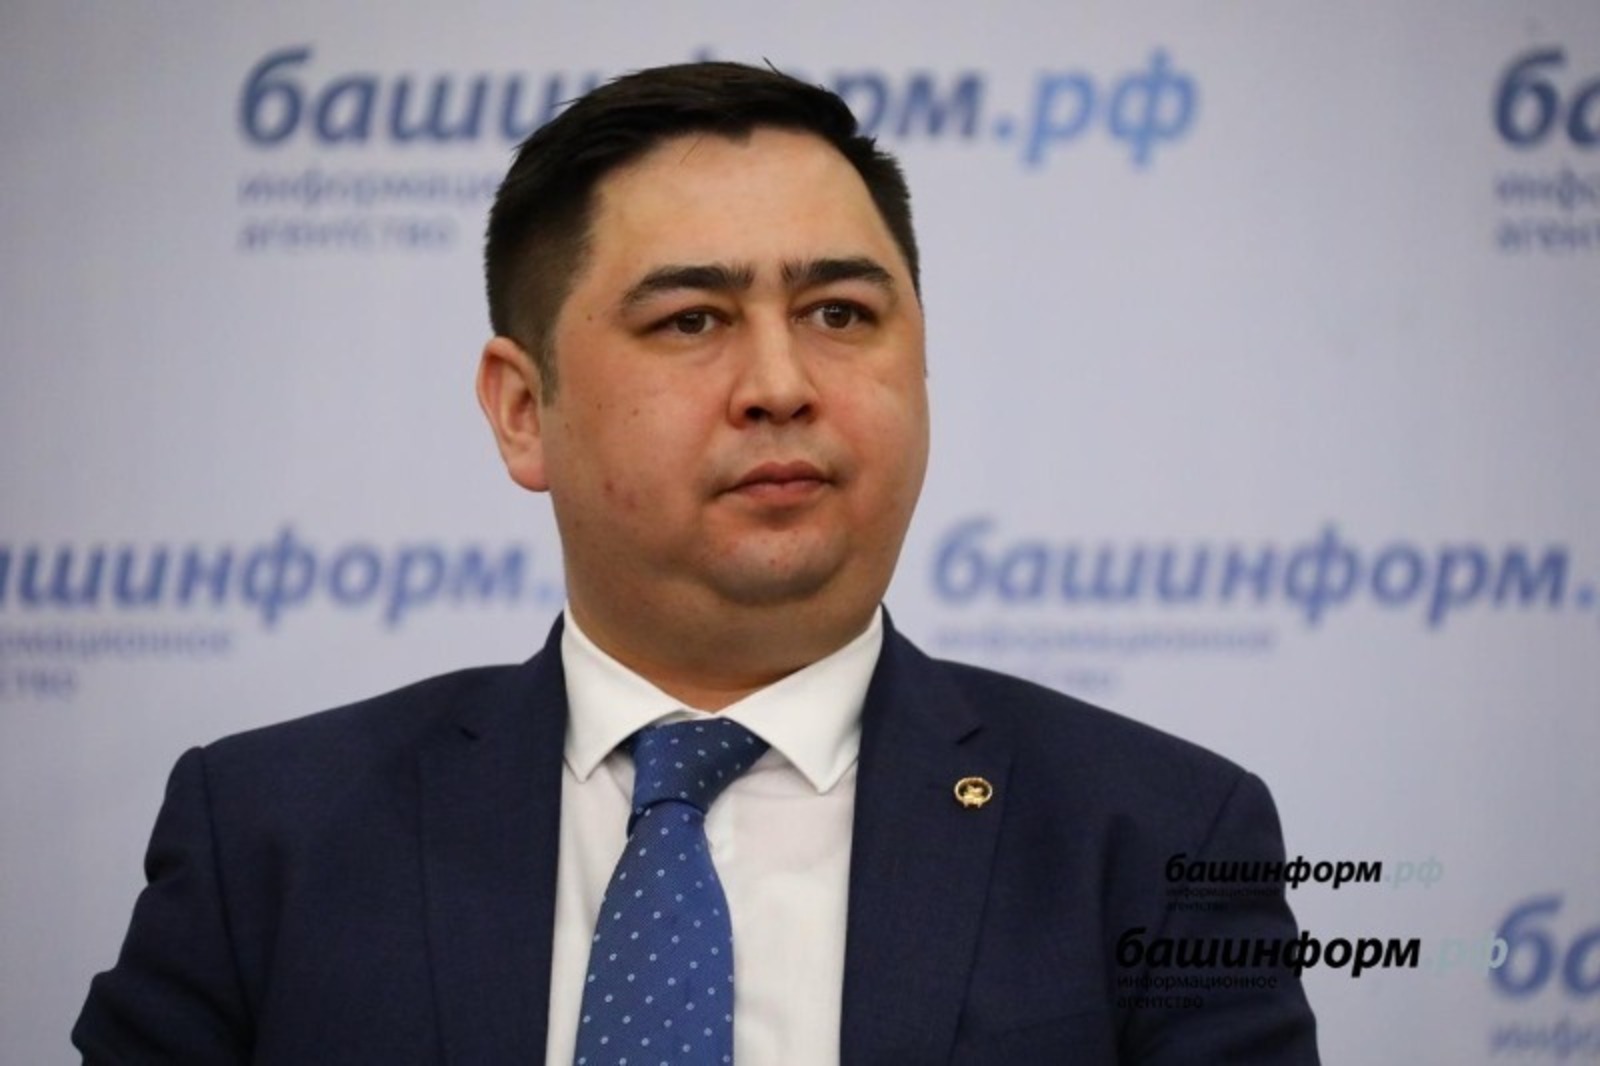 Вице-премьер Азат Бадранов назначен первым заместителем премьер-министра правительства Башкирии